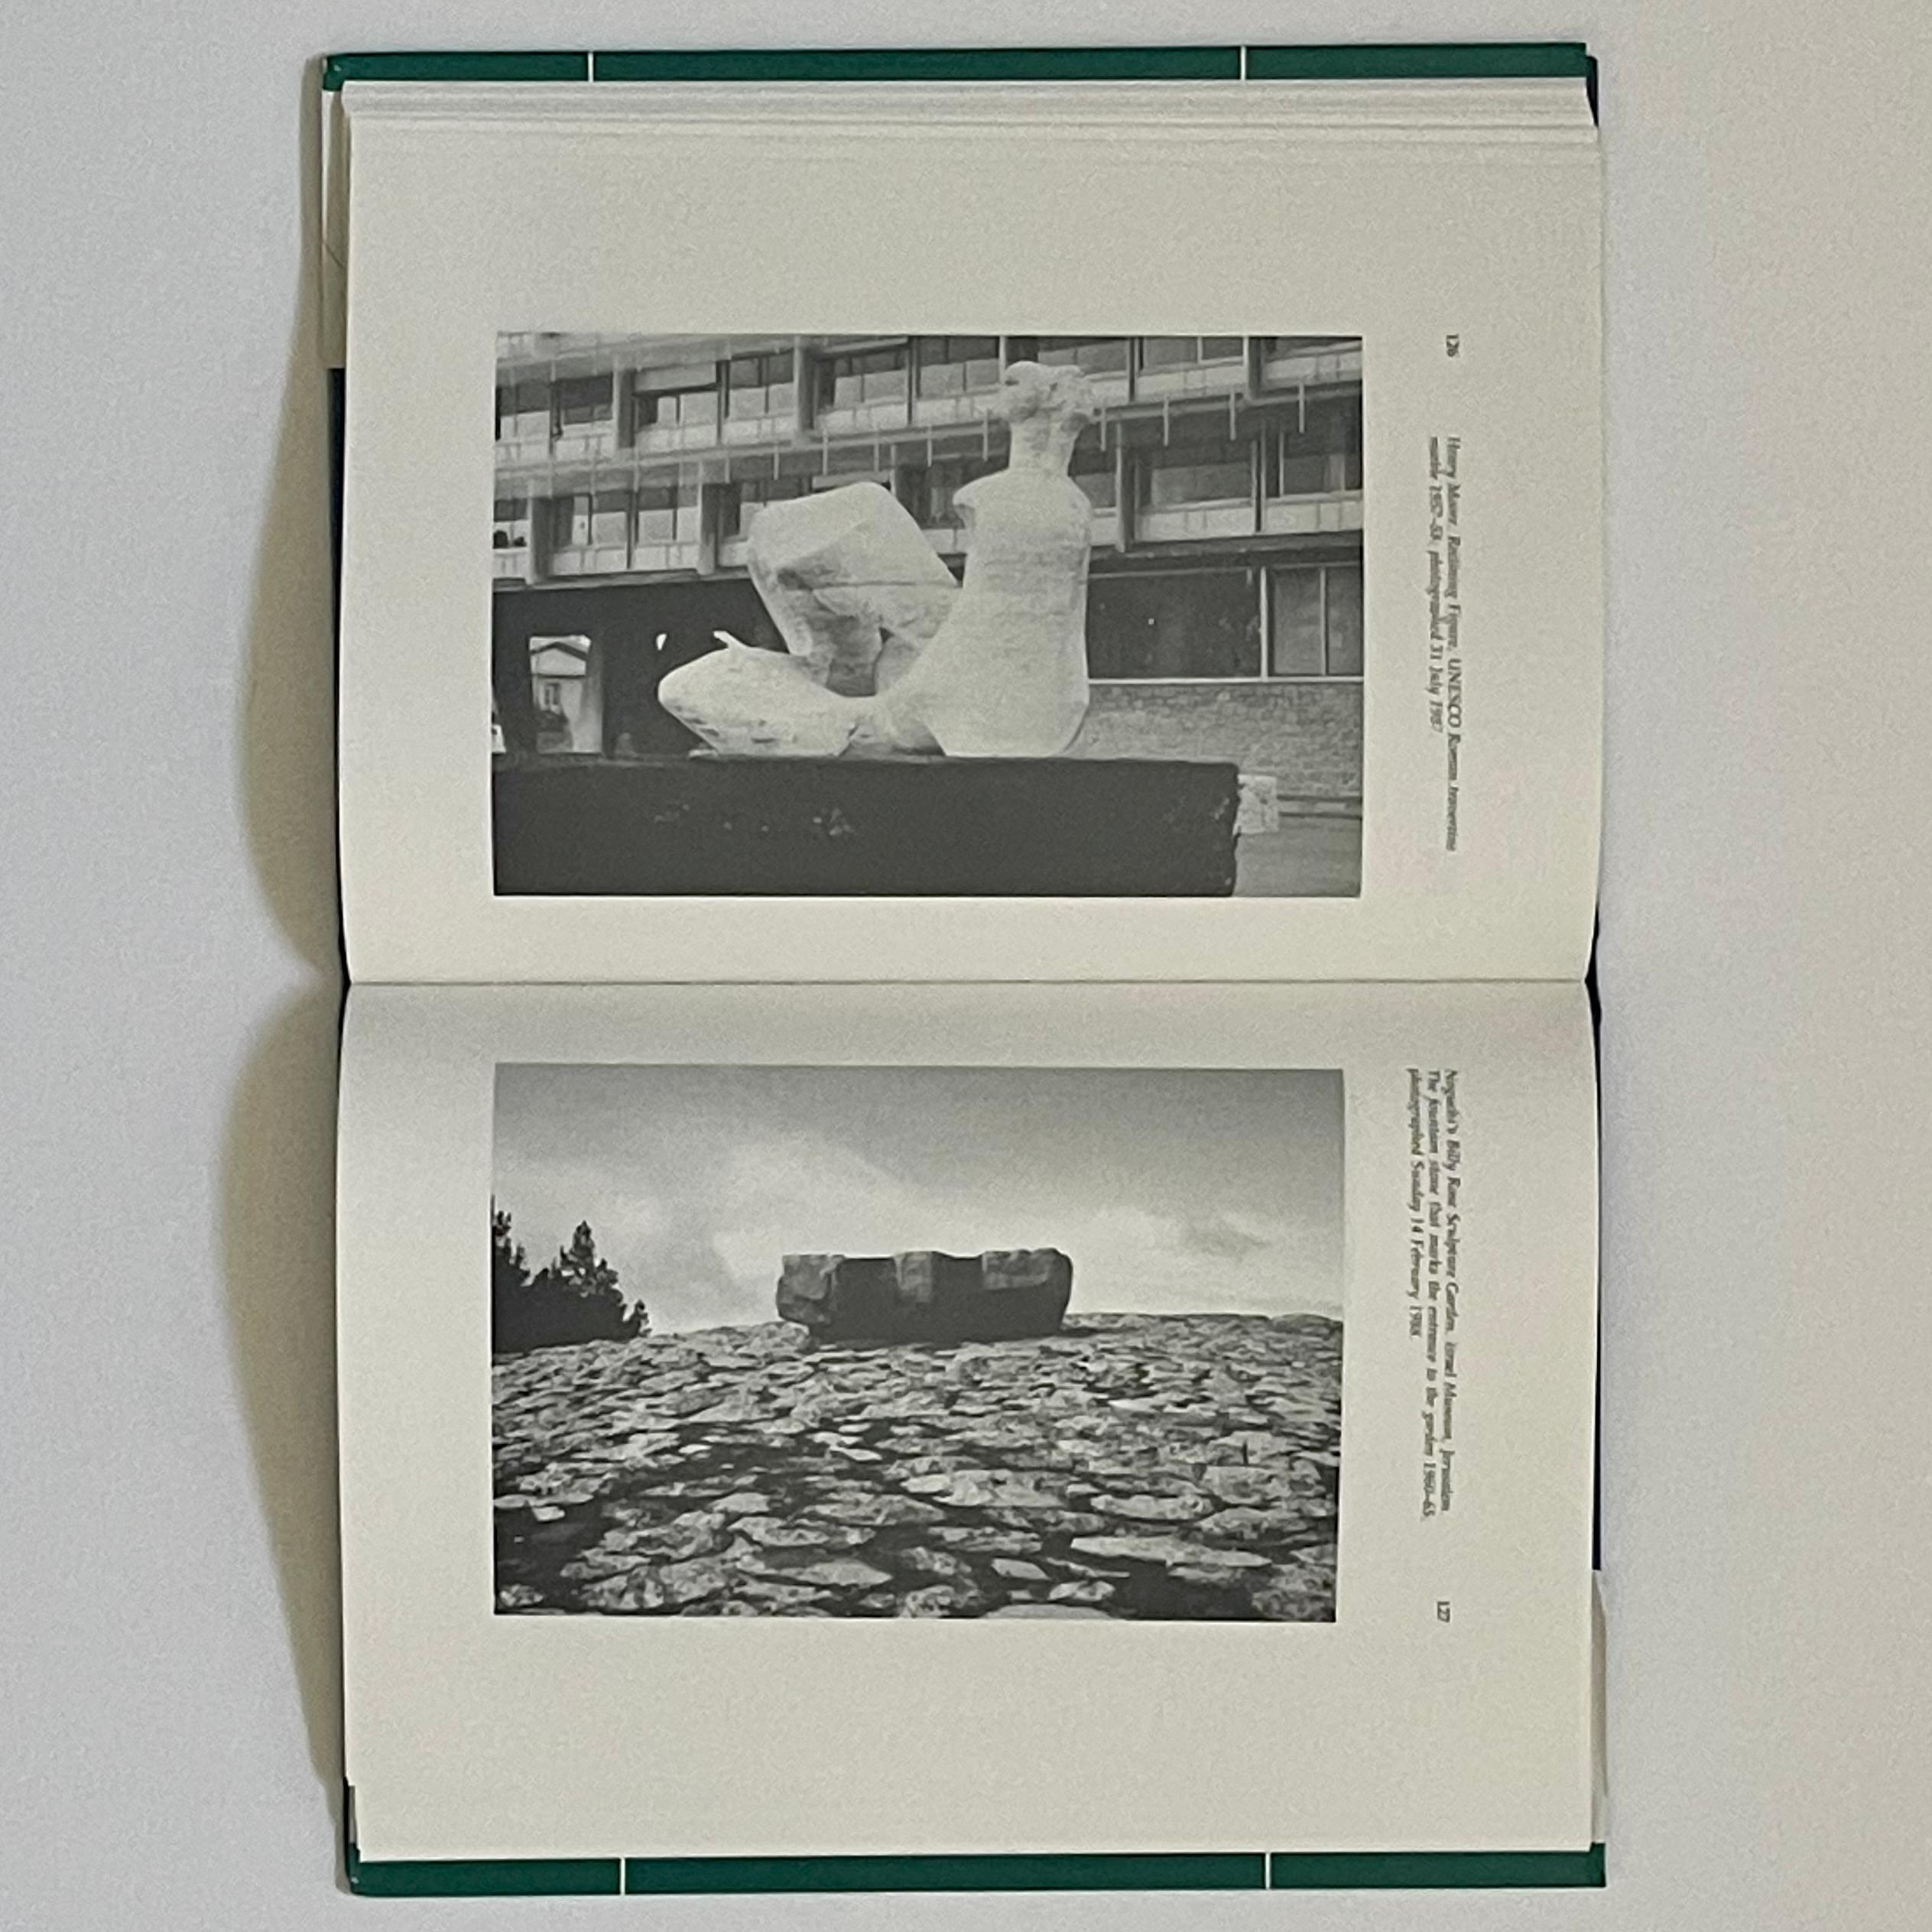 Mid-Century Modern Isamu Noguchi : Aspects de la pratique d'un sculpteur -Tim Threlfall- 1ère édition, 1992